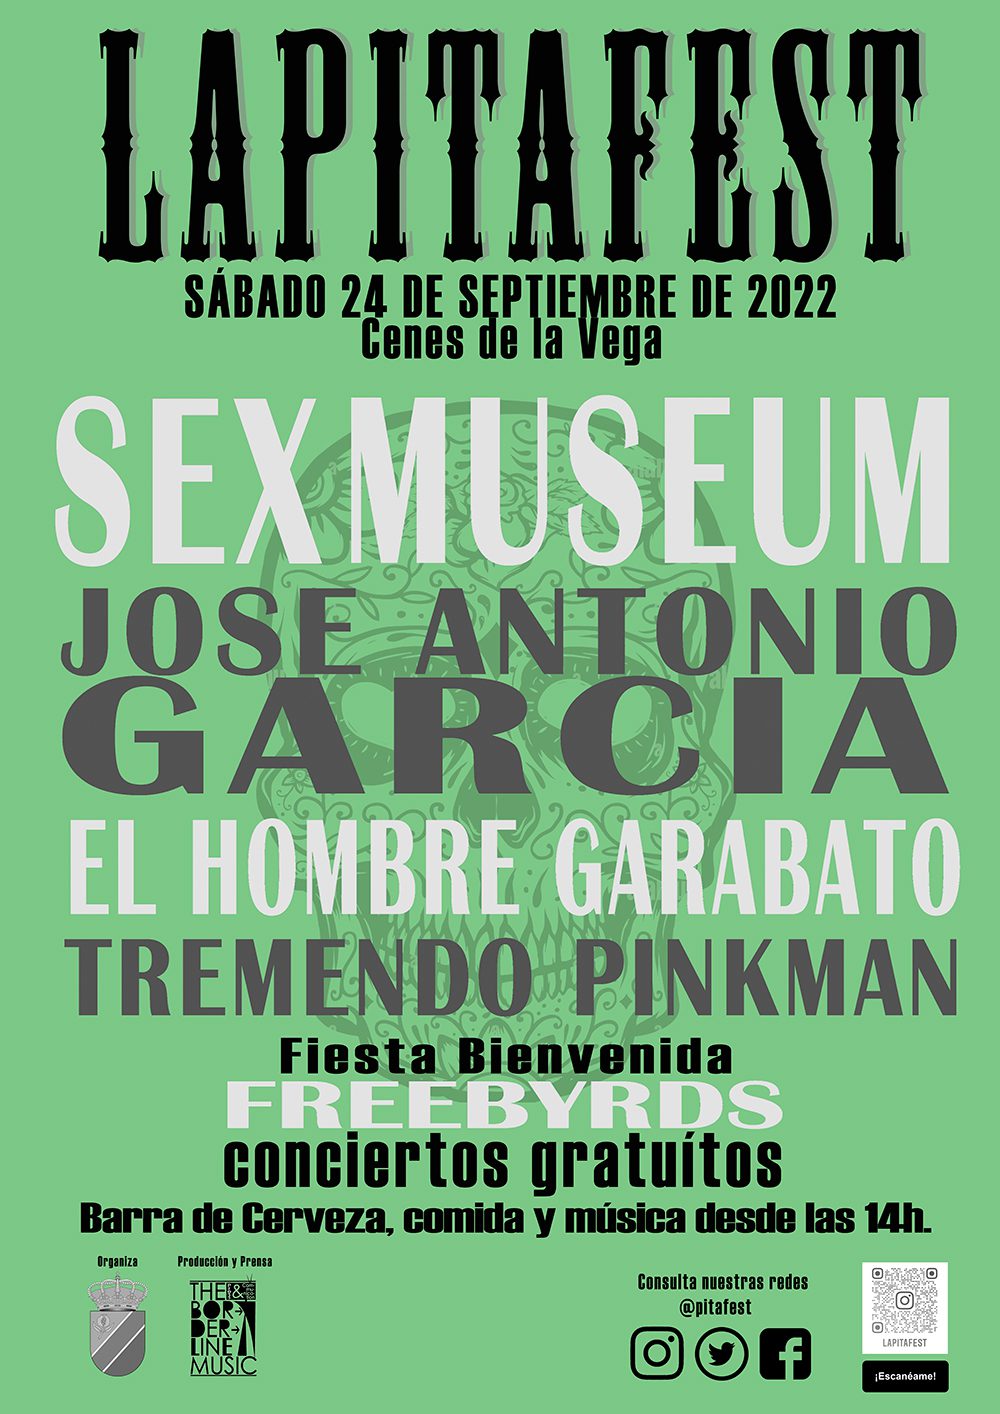 Cartel definitivo de la primera edición de La Pita Fest